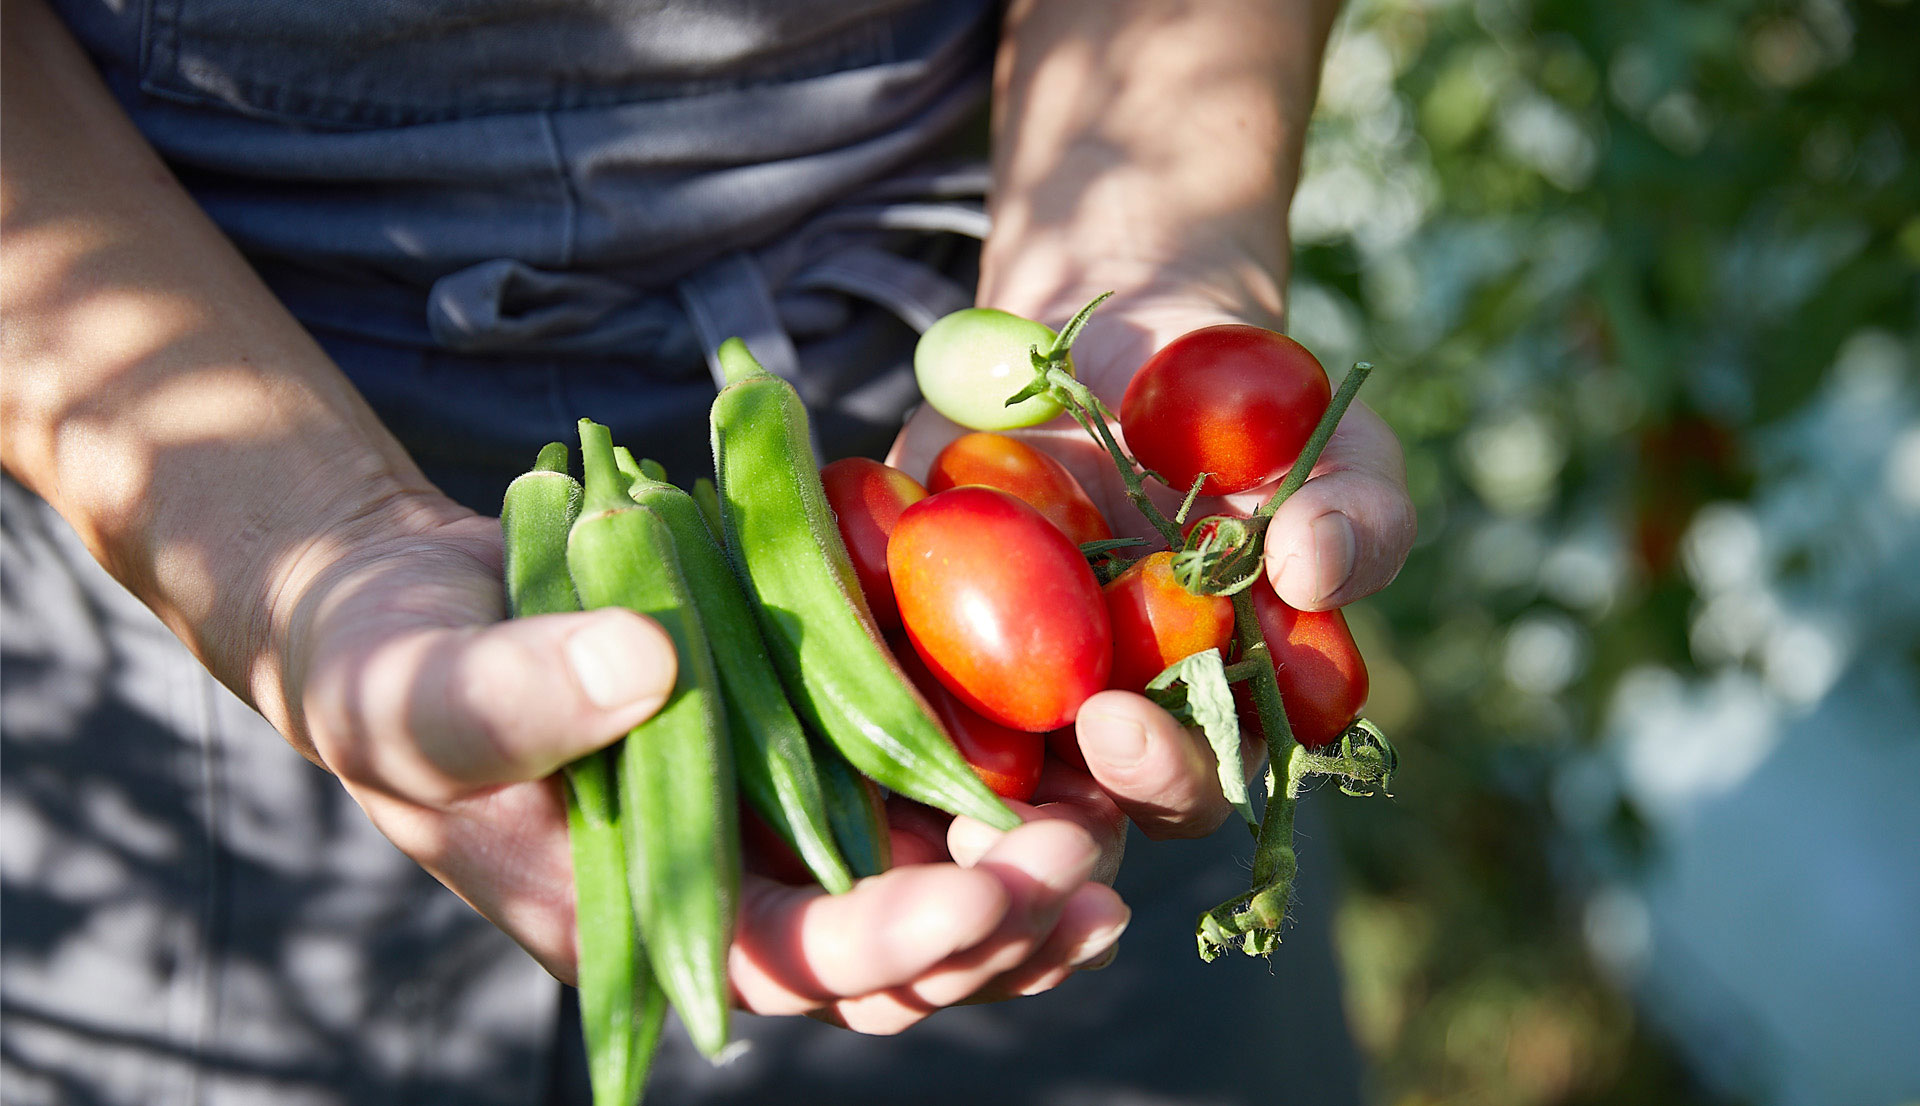 ヘーベルハウスLONGLIFE IS BEAUTIFUL kurkkufields(クルックフィールズ)で収穫されたトマトとオクラを持つ様子